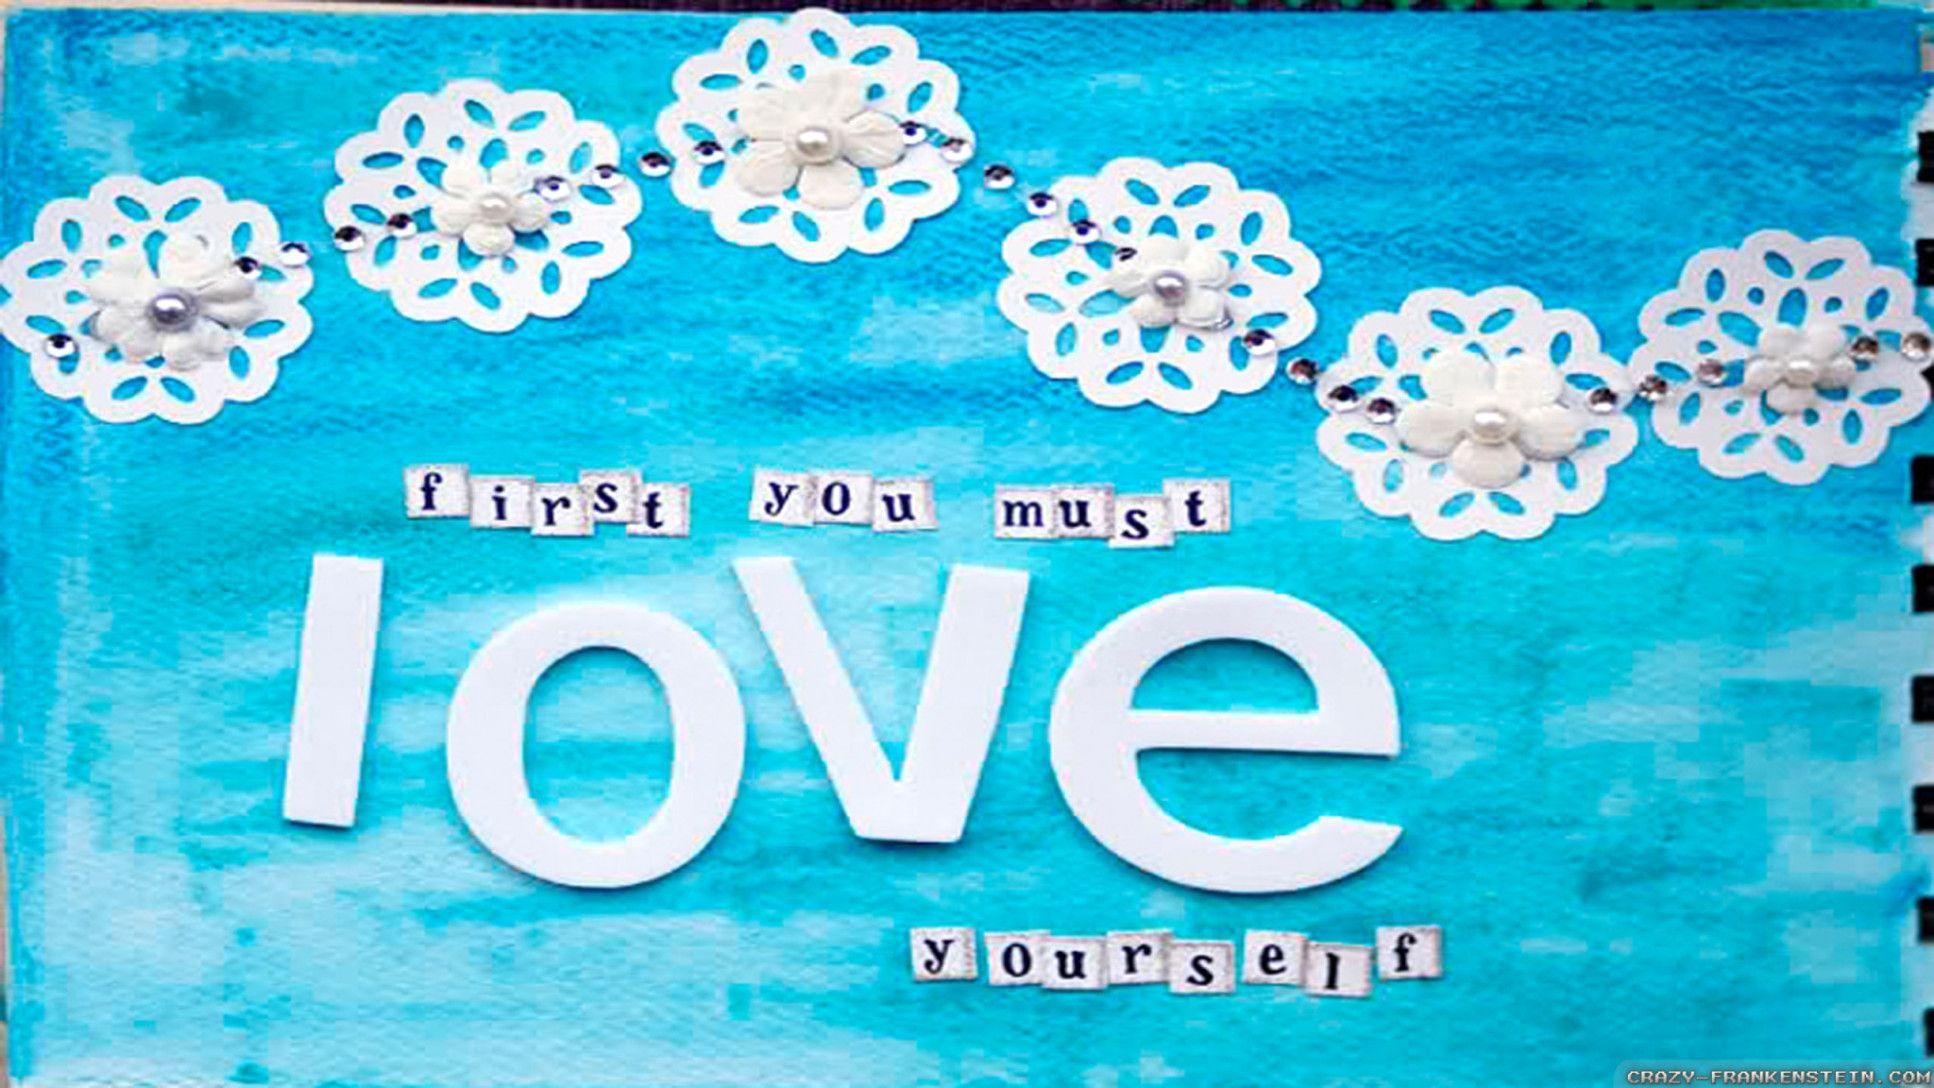 Love Yourself BTS Desktop Wallpaper Free Love Yourself BTS